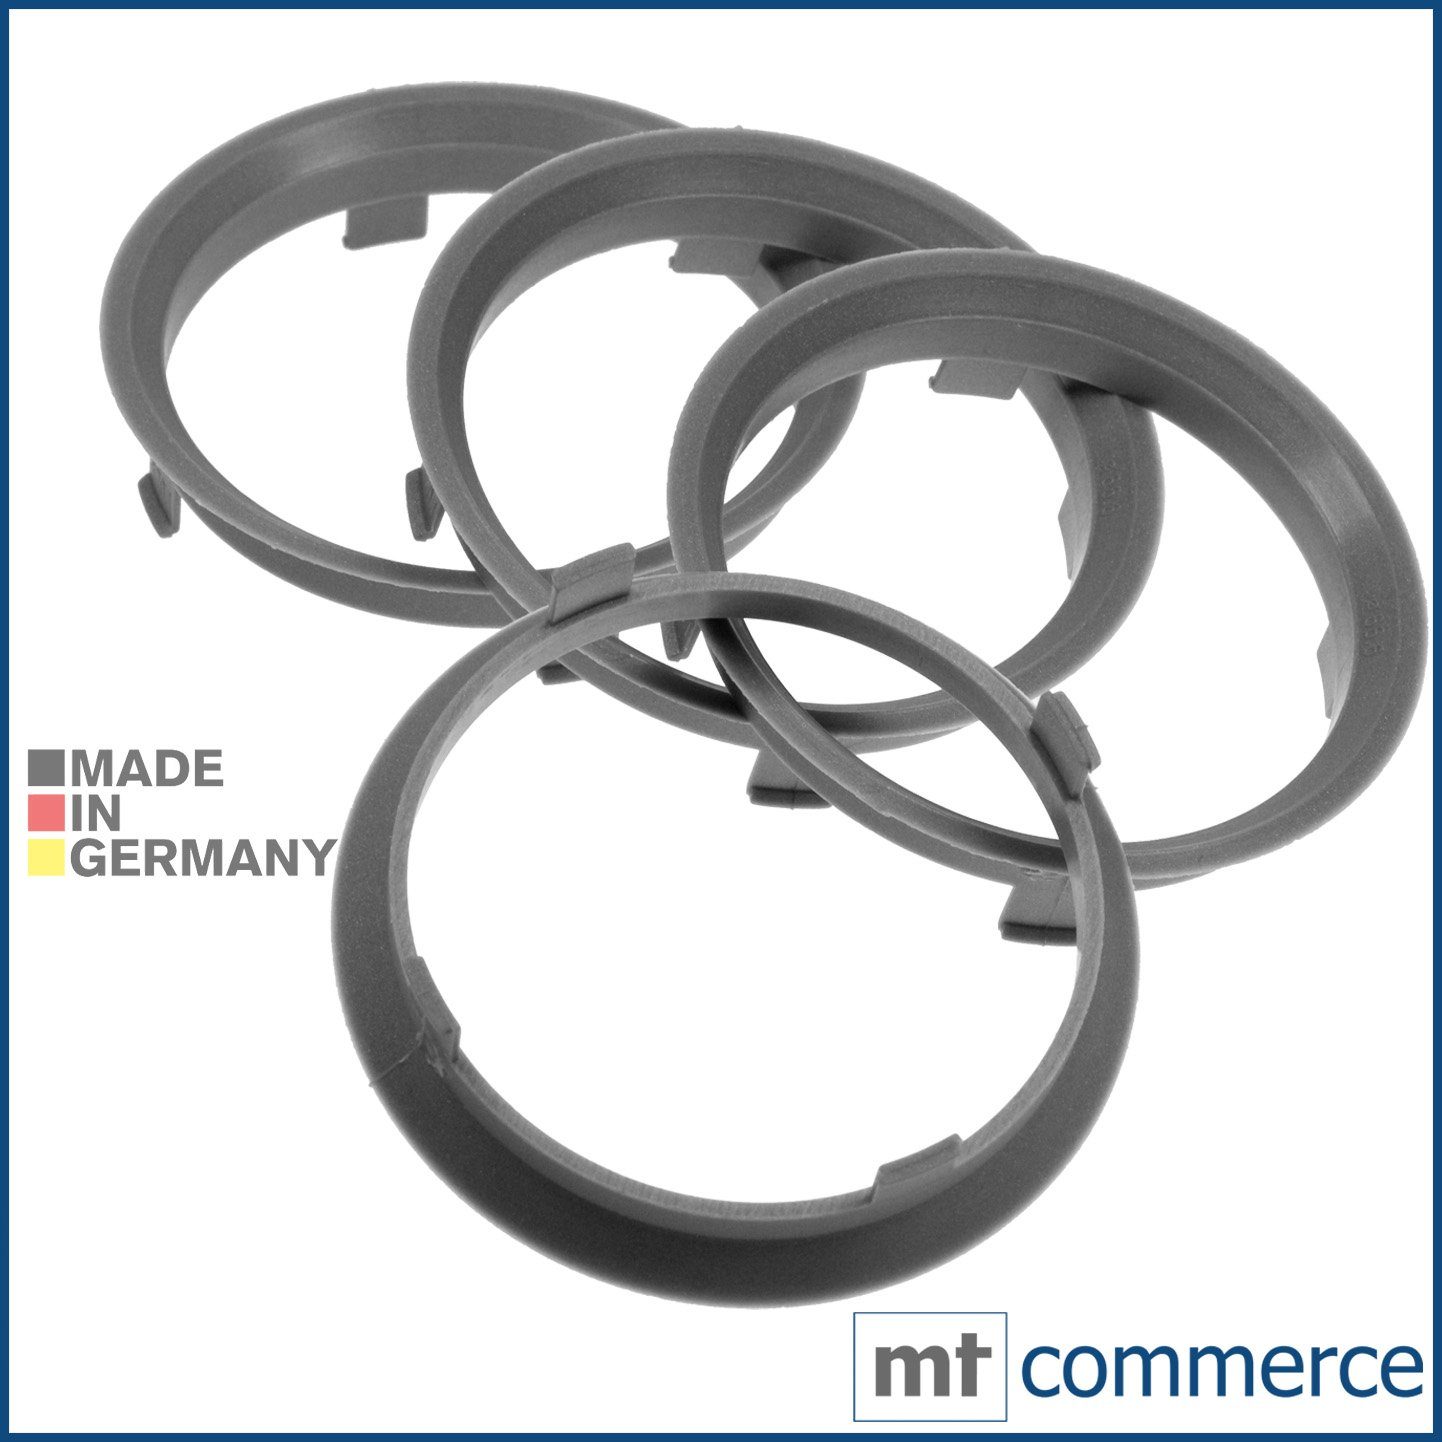 RKC Reifenstift 4X Zentrierringe Silber Felgen Ringe Made in Germany, Maße:  70,1 x 66,6 mm